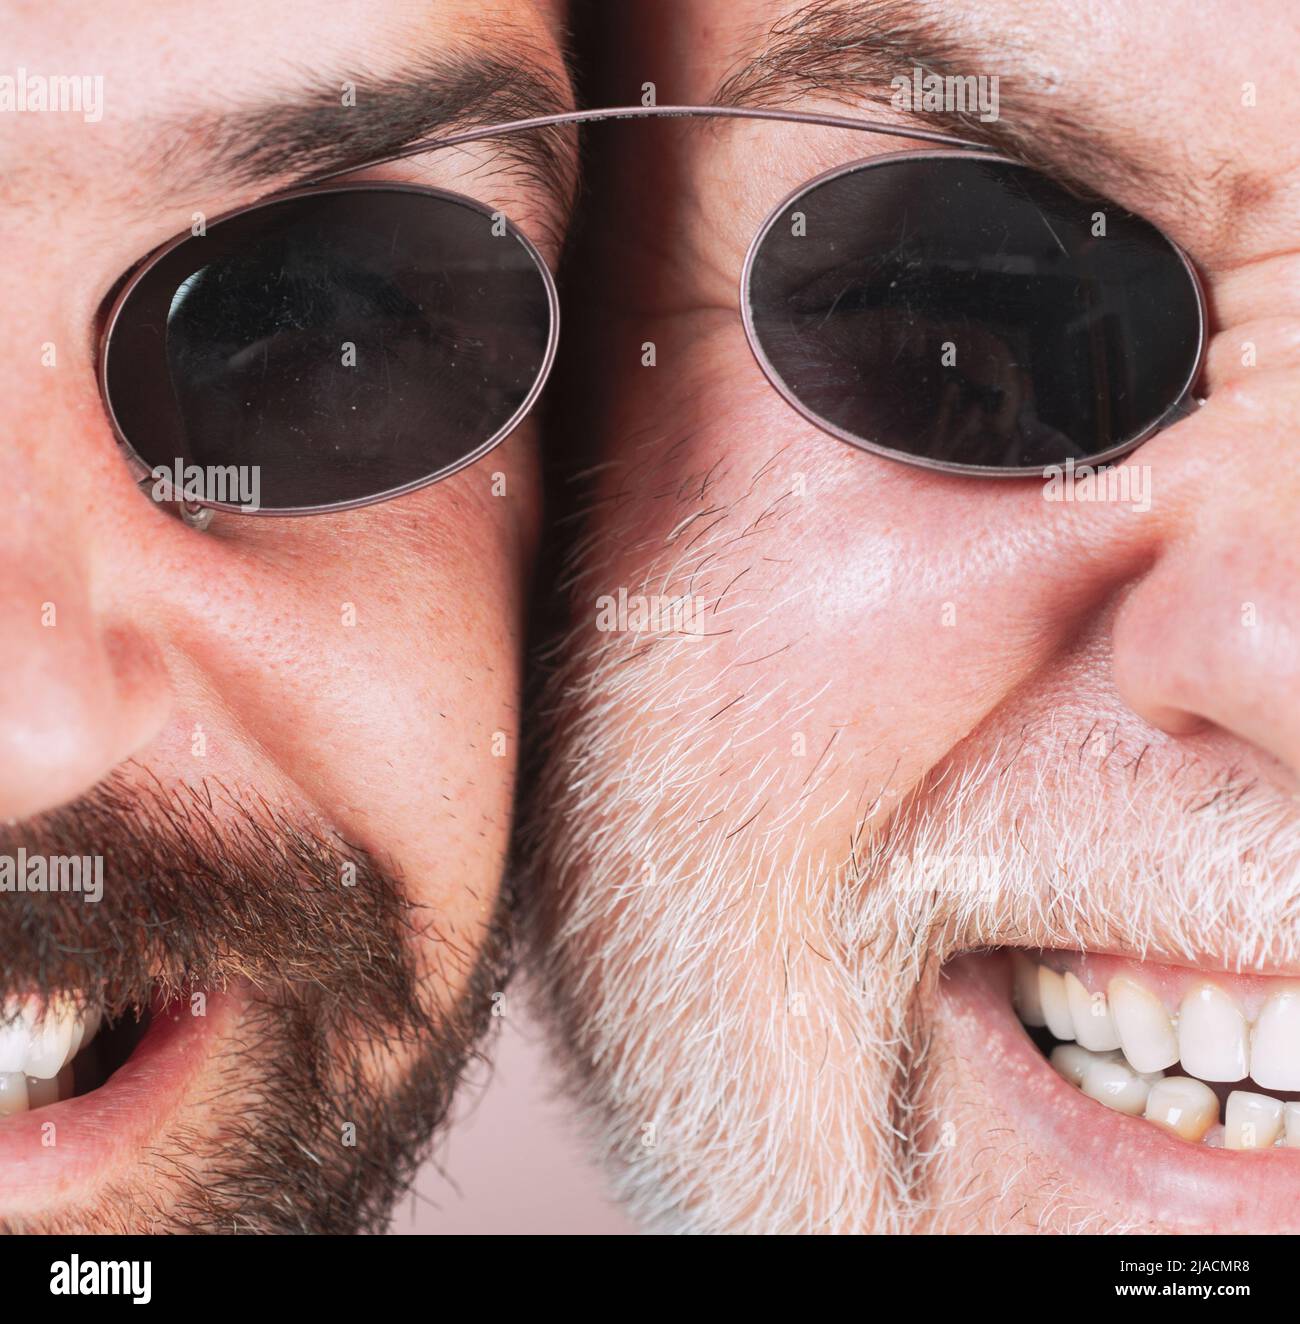 Lunettes pour hommes. Deux Beardeds hommes d'âge moyen portant des lunettes regardant l'appareil photo avec une expression sérieuse. Concept de lunettes. Homme âgé avec son fils. Banque D'Images